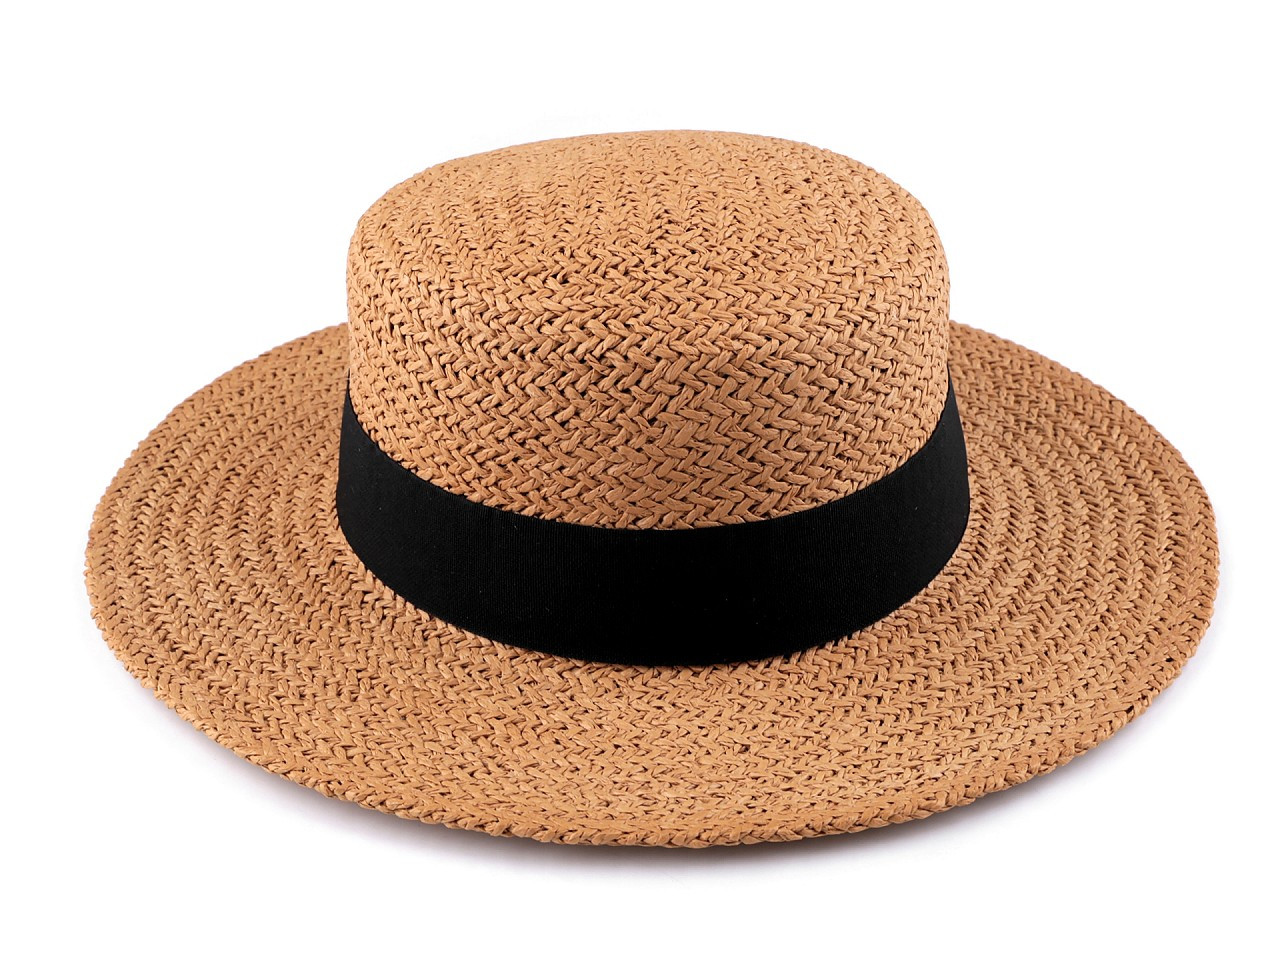 Dámský letní klobouk / slamák, barva 2 hnědá přírodní